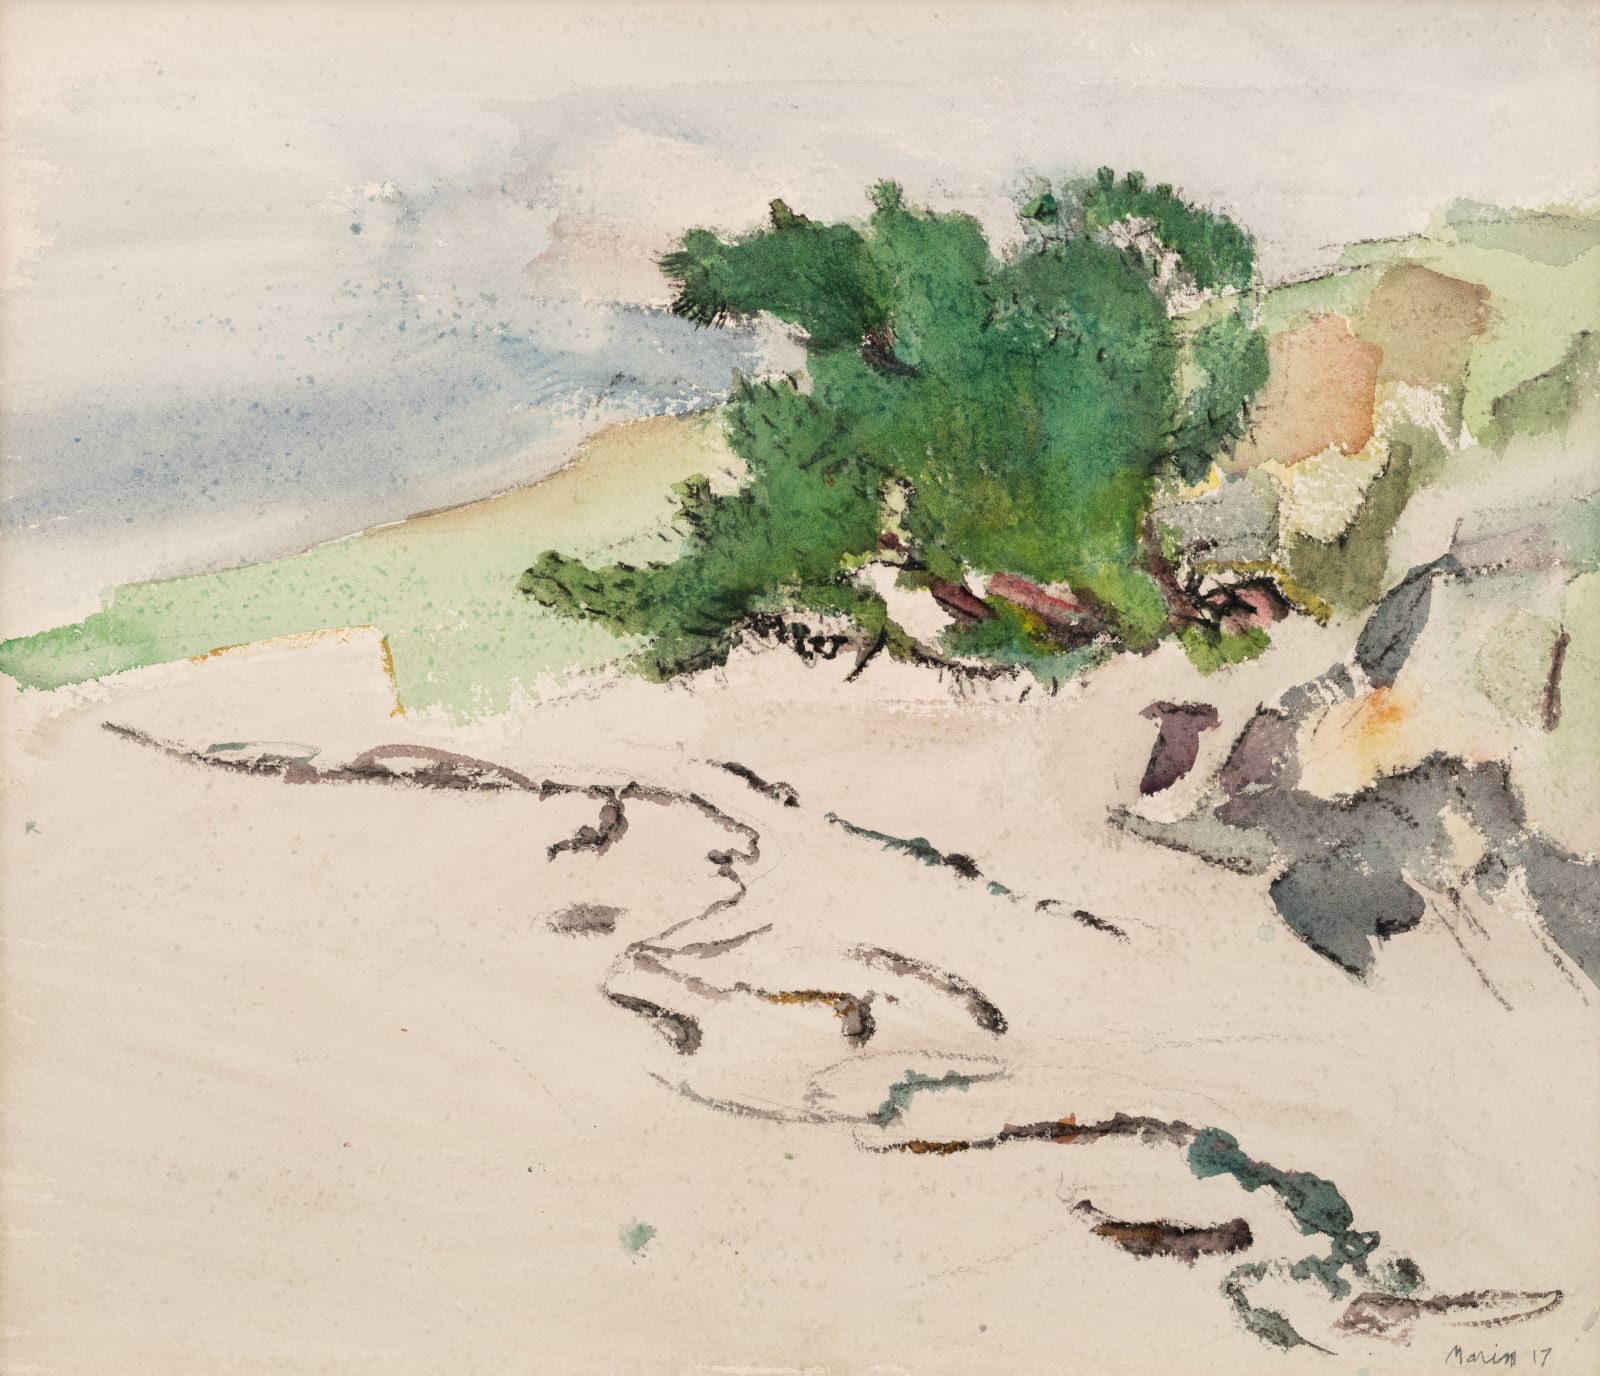 John Marin, Tree, Beach and Sea, Small Point, Maine, 1917